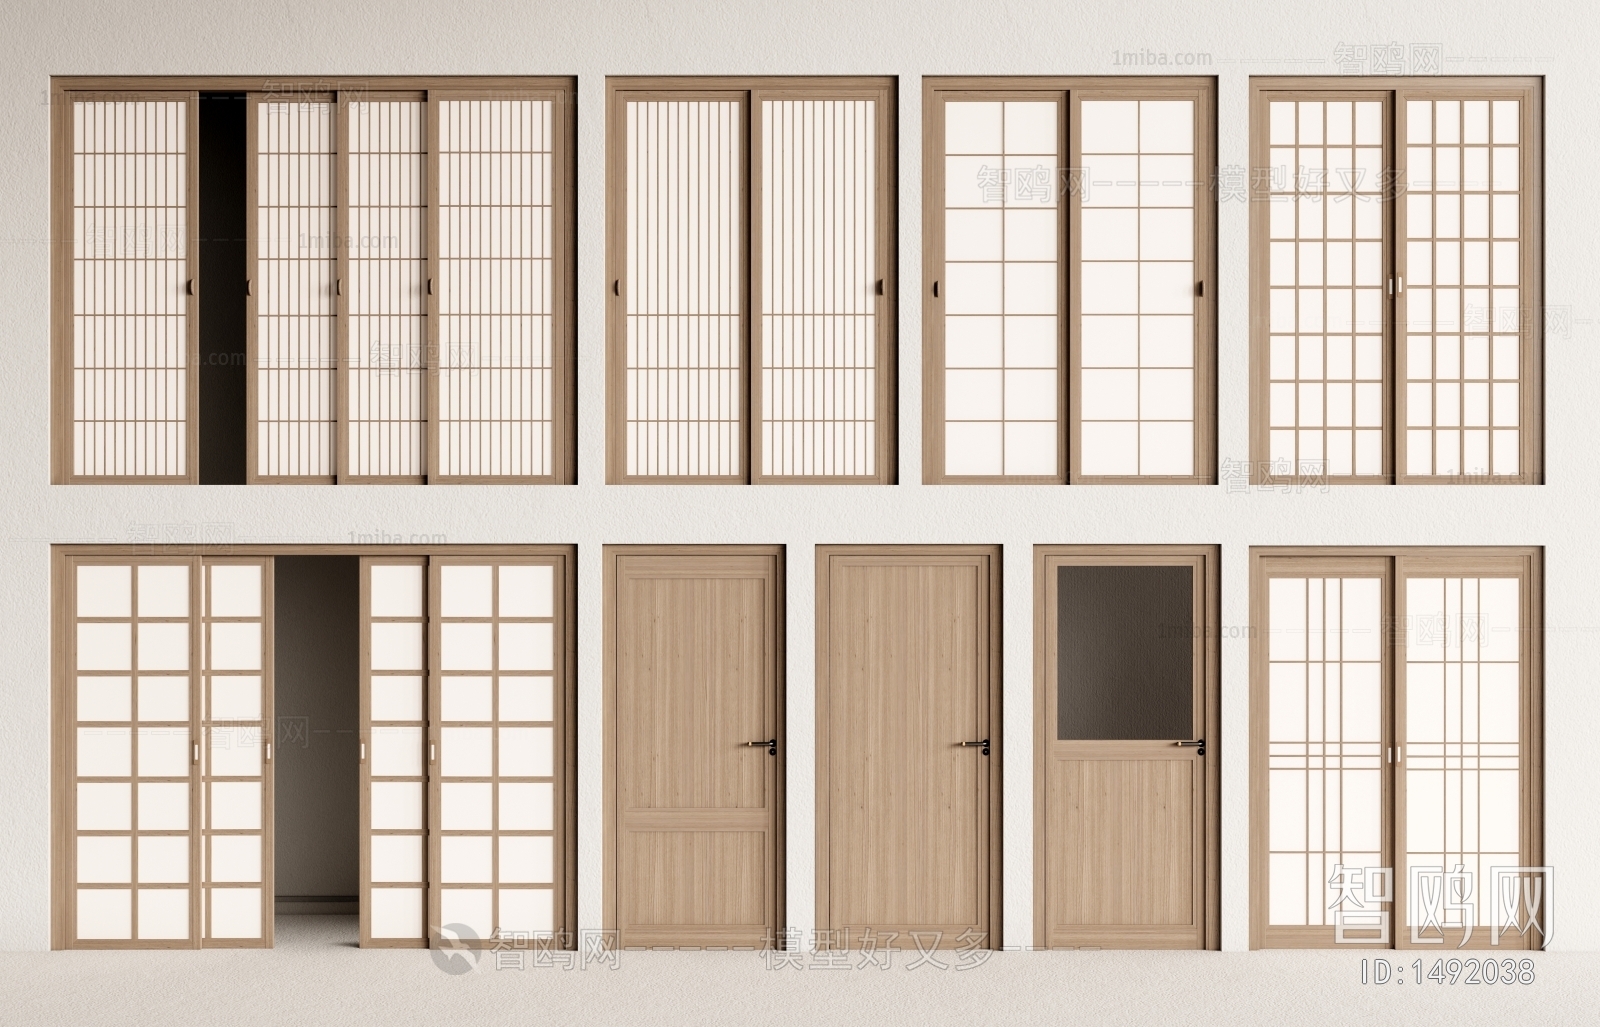 Japanese Style Single Door